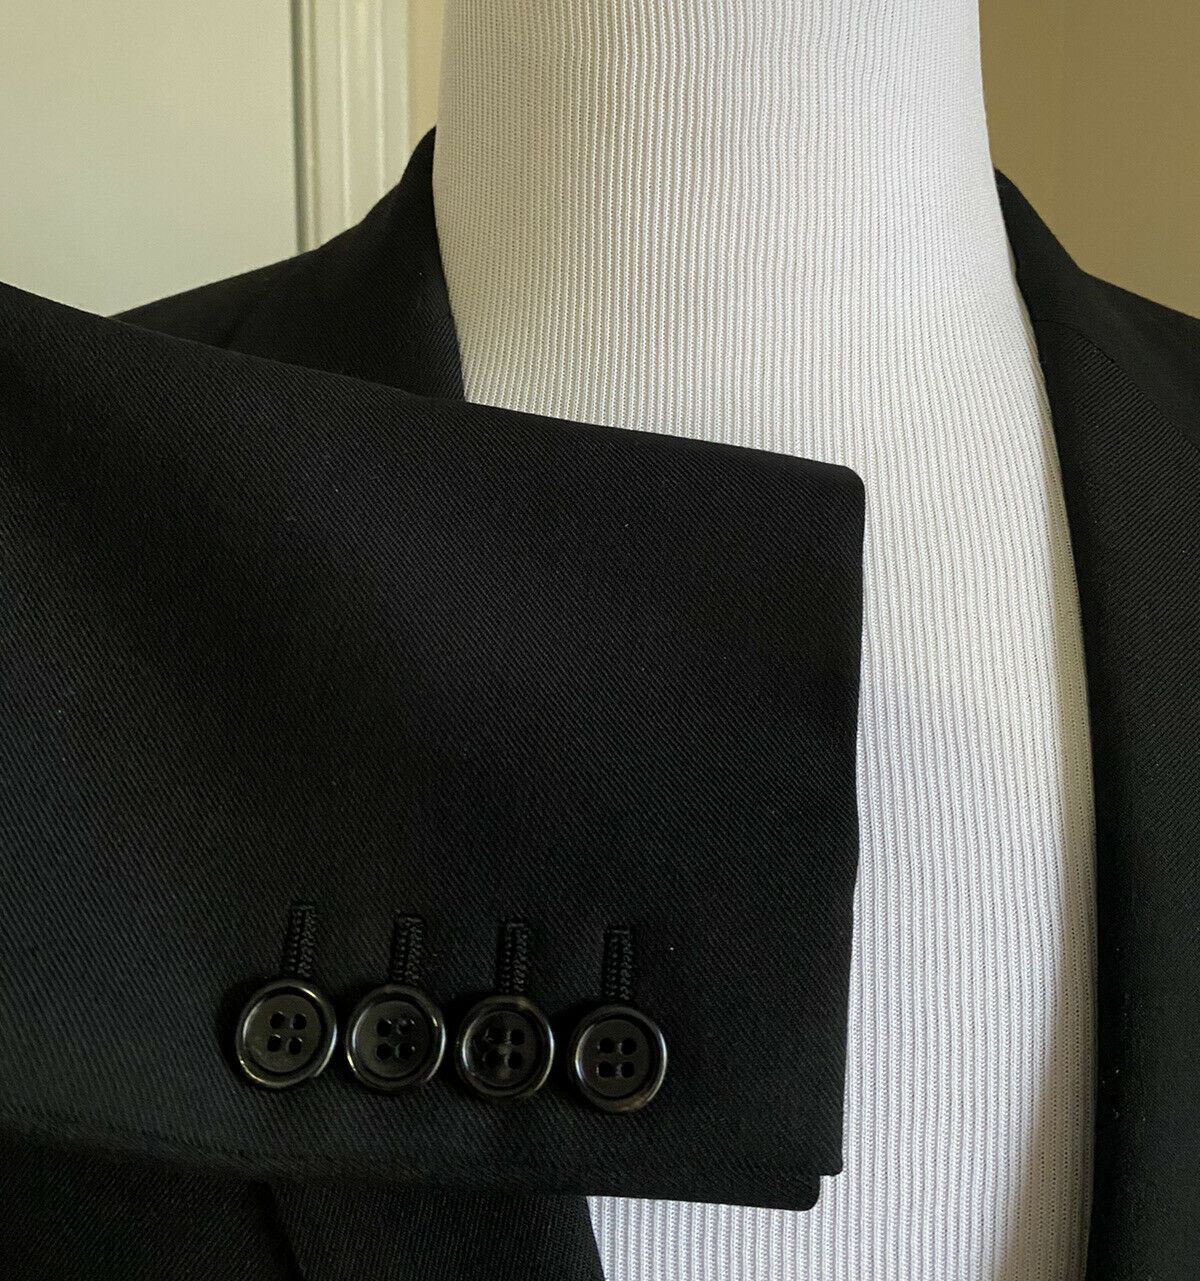 New $2990 Saint Laurent Men’s Suit Black 38R US/48R Eu Italy